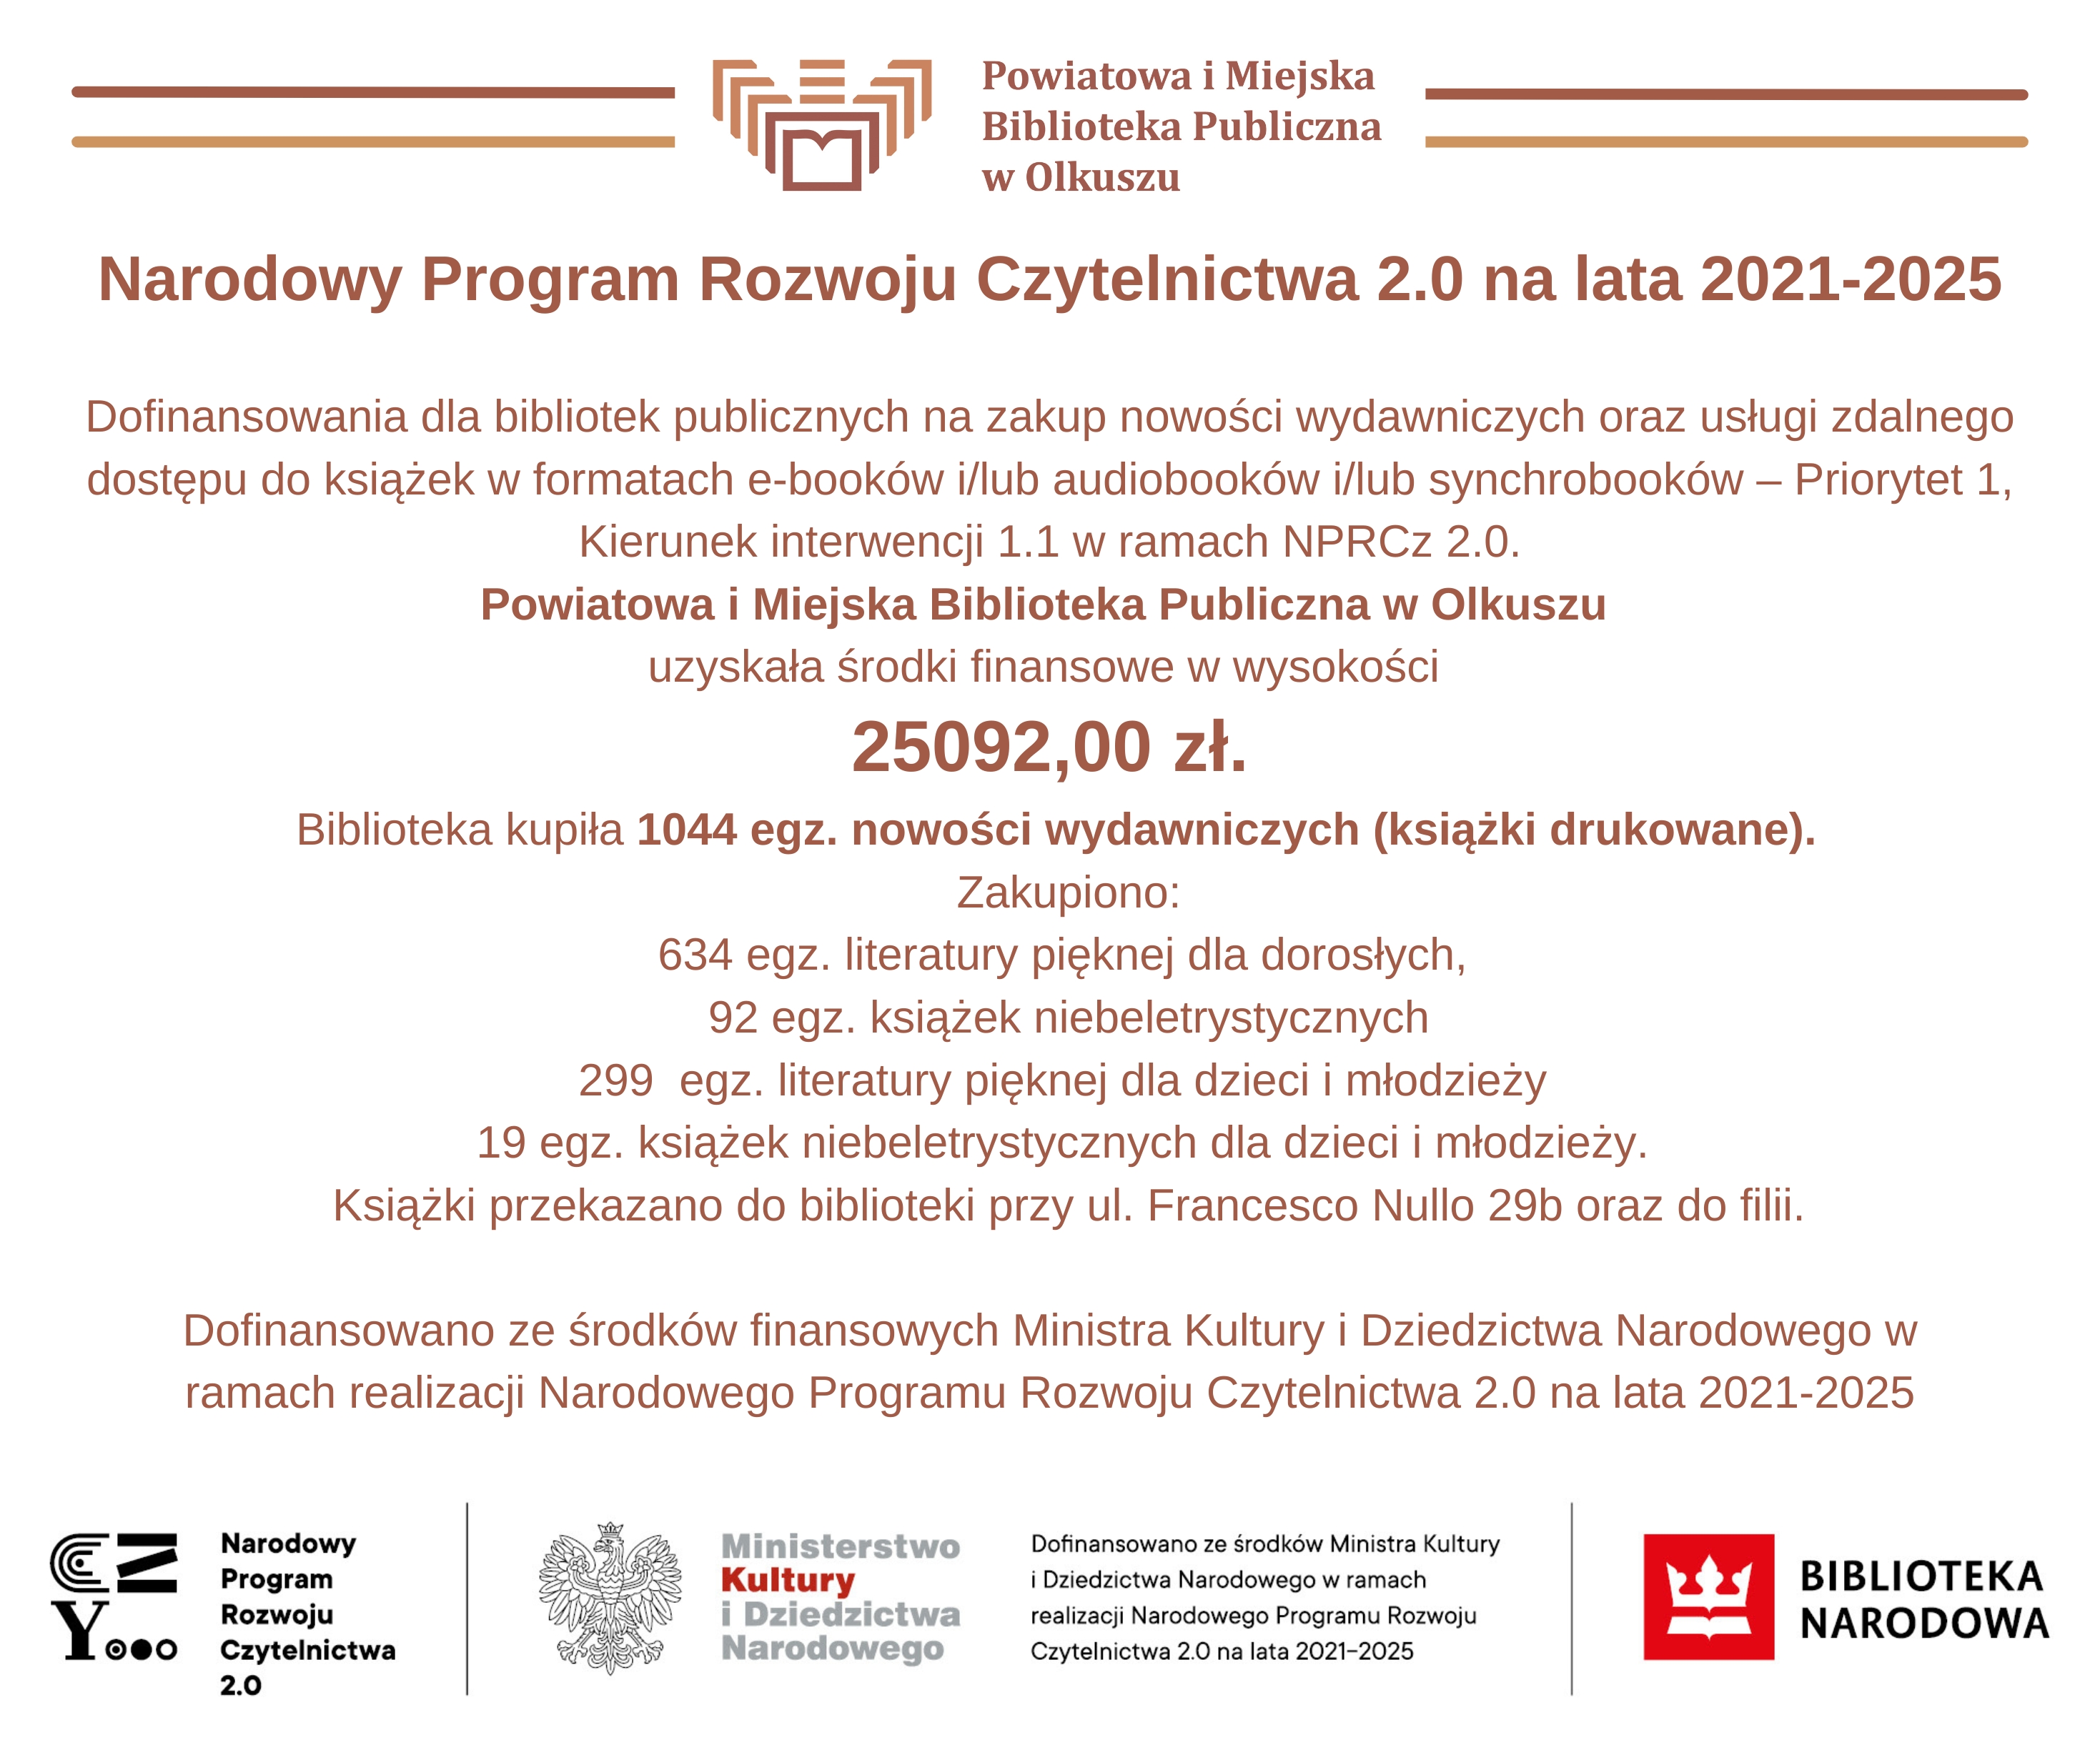 Informacje na temat dofinansowania dla Powiatowej i Miejskiej Biblioteki Publicznej w Olkuszu z Narodowego Programu Rozwoju Czytelnictwa 2.0